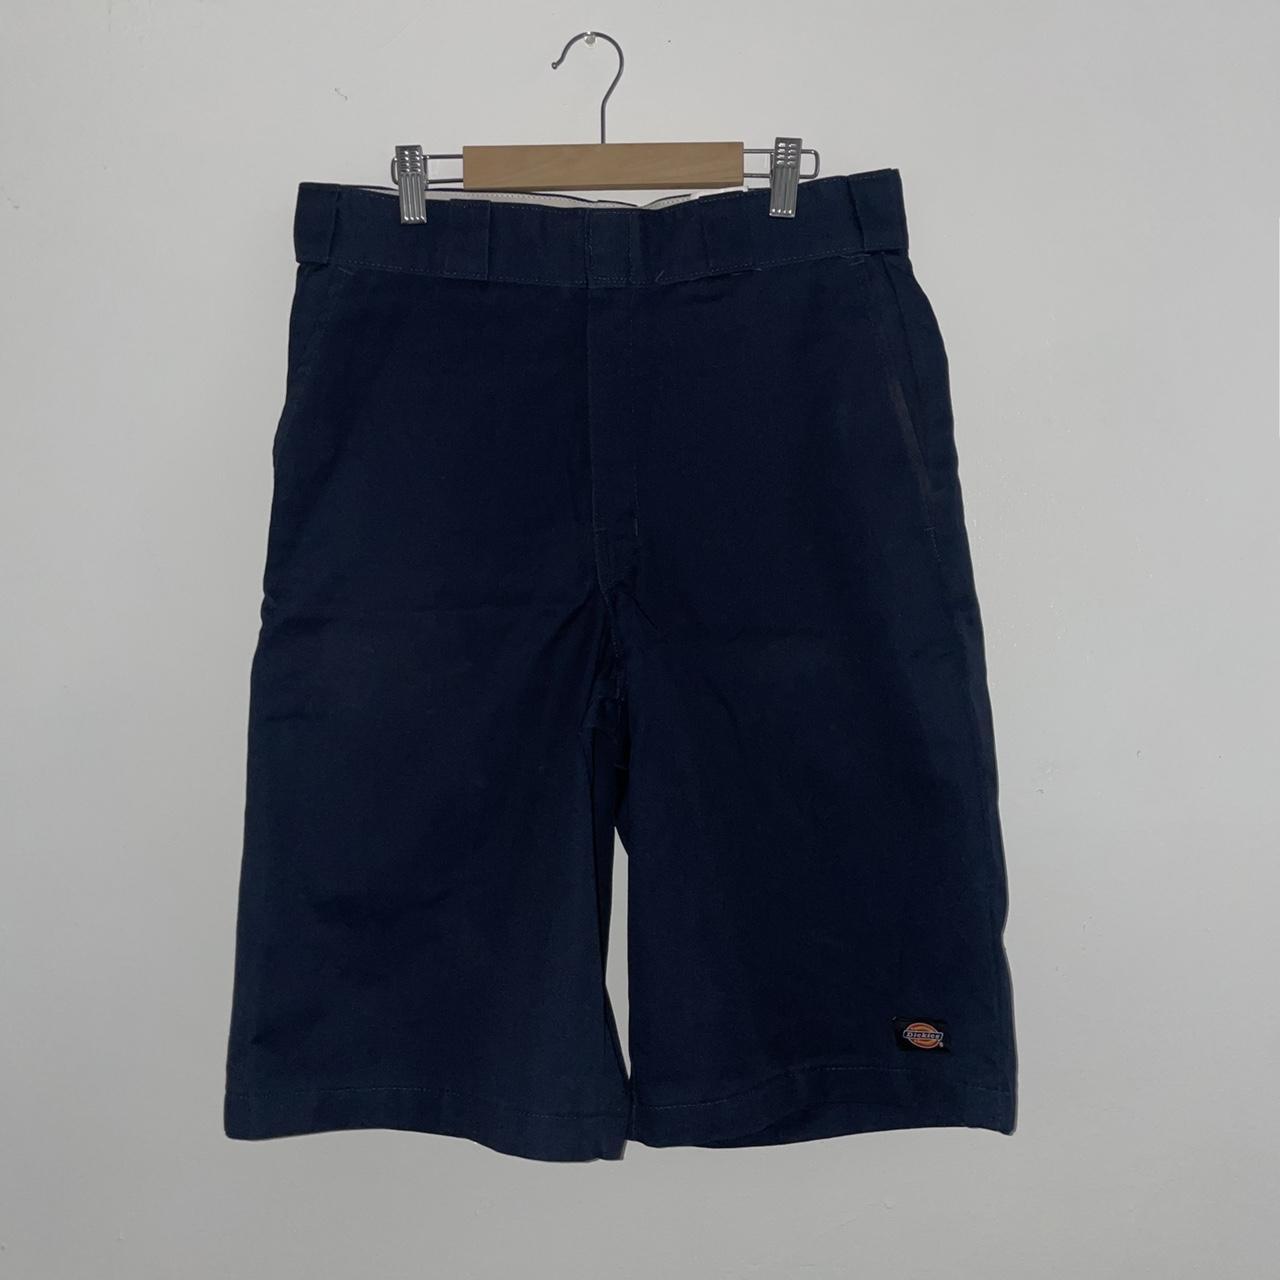 Loose Fit Cargo Shorts for Men | Dickies - Dickies US